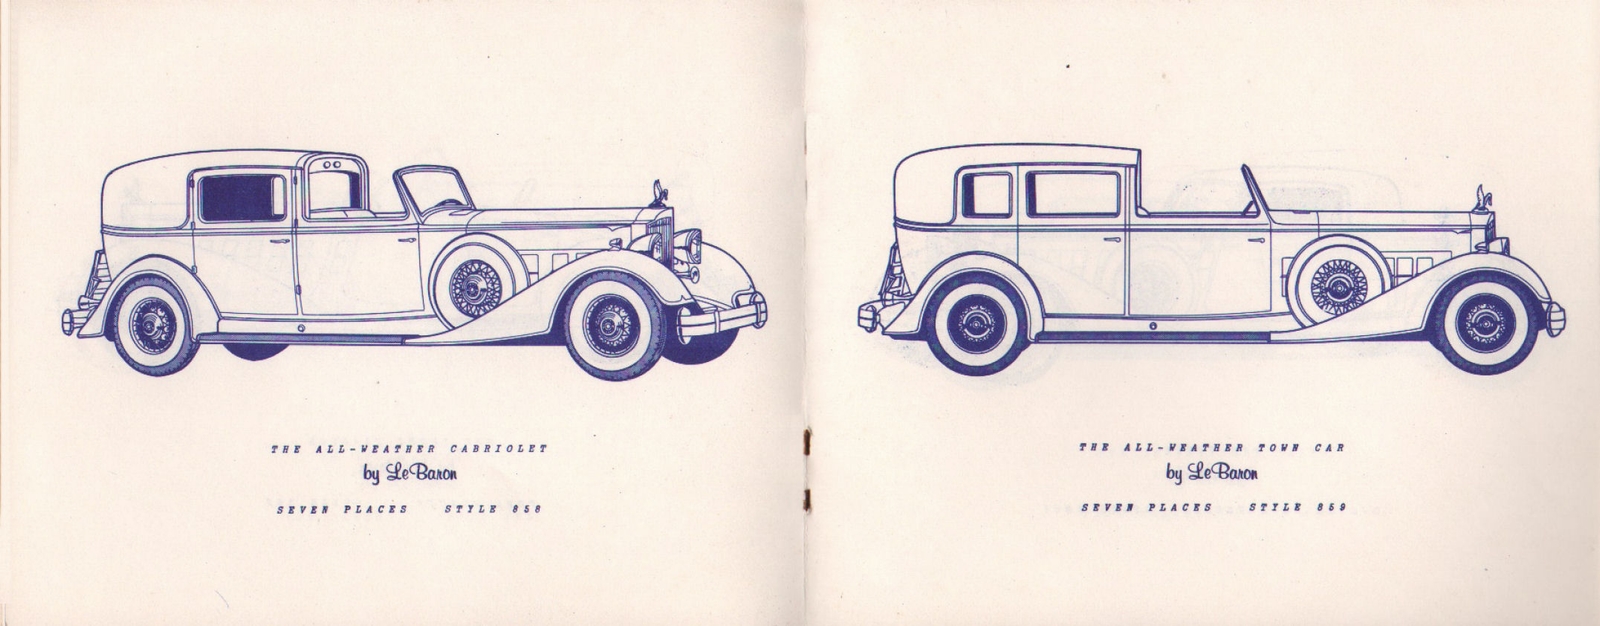 n_1934 Packard Custom Cars Booklet-06-07.jpg